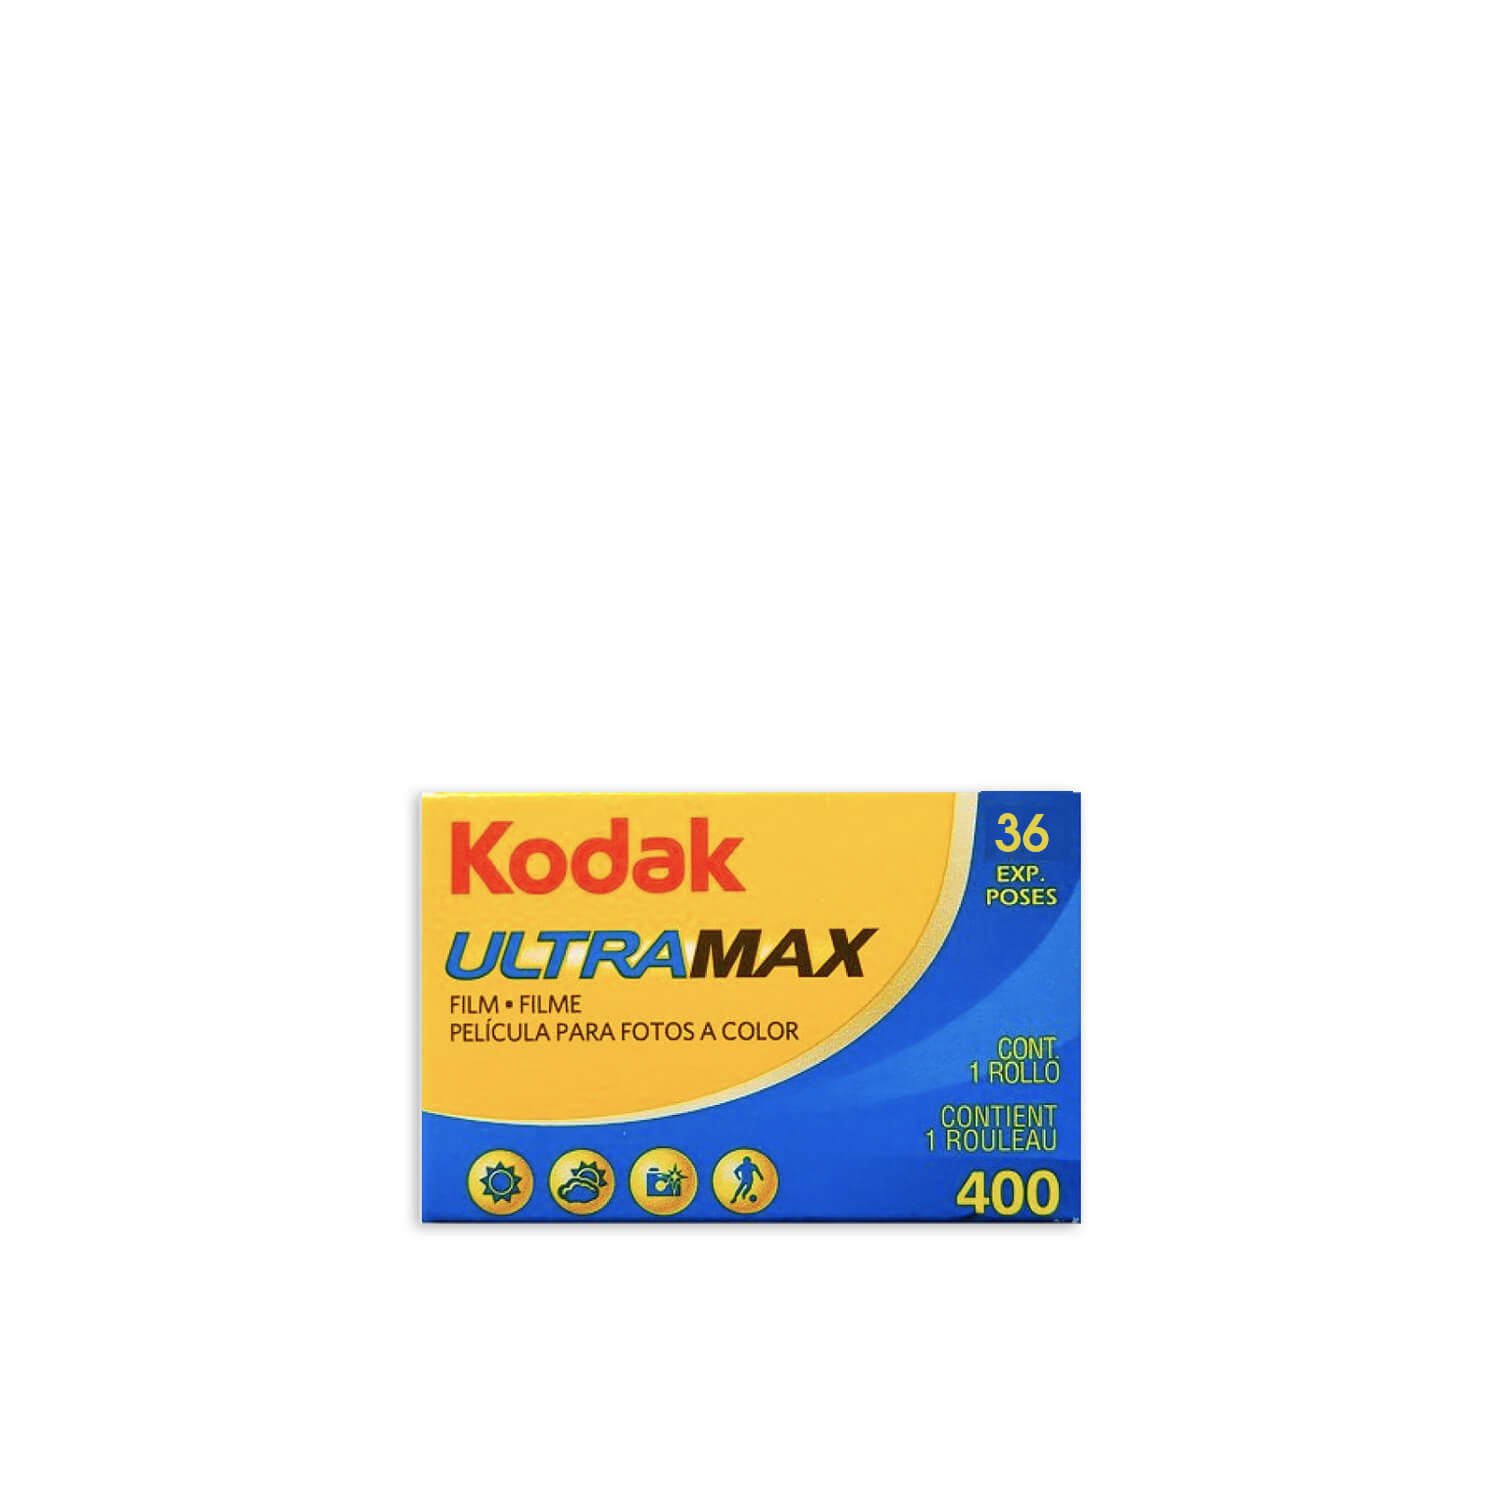 Kodak UltraMax 400:135-36